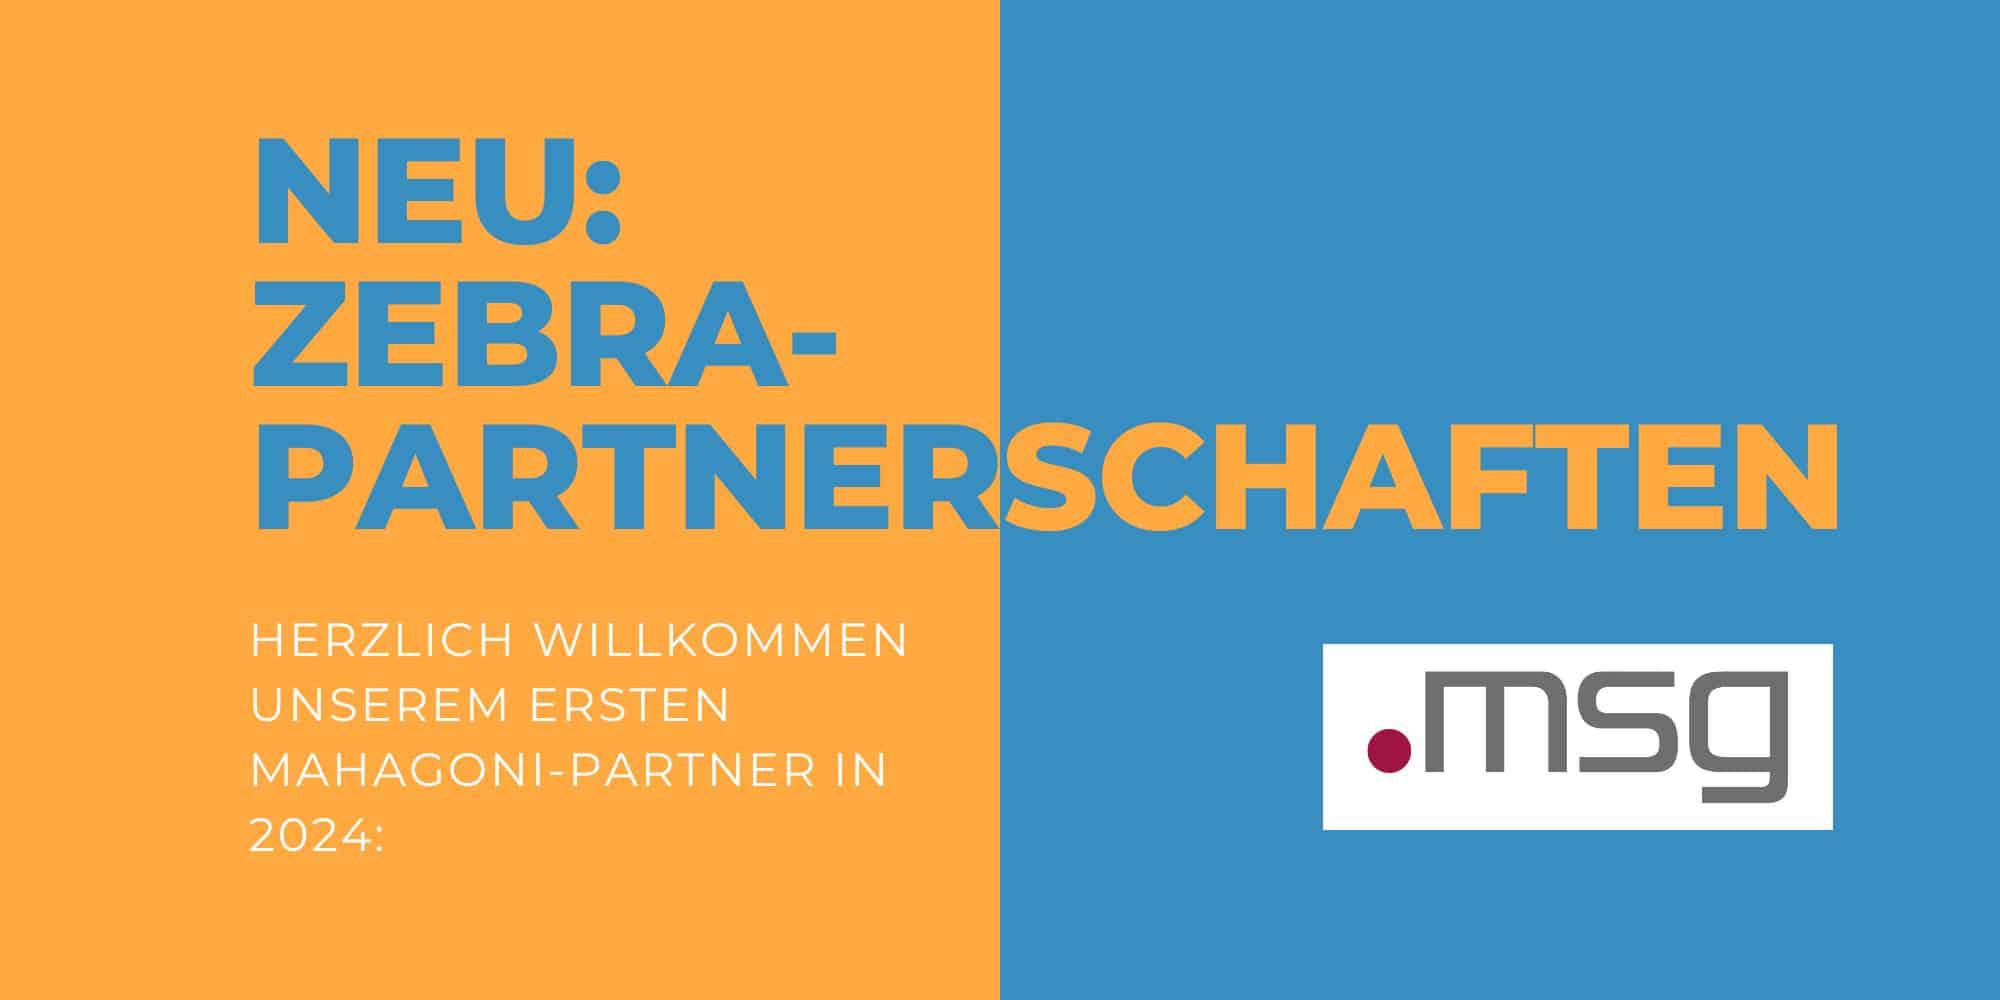 Neu: Zebra-Partnerschaften. Herzlich willkommen unserem ersten Mahagoni-Partner in 2024: msg for banking (abgebildet mit Logo)